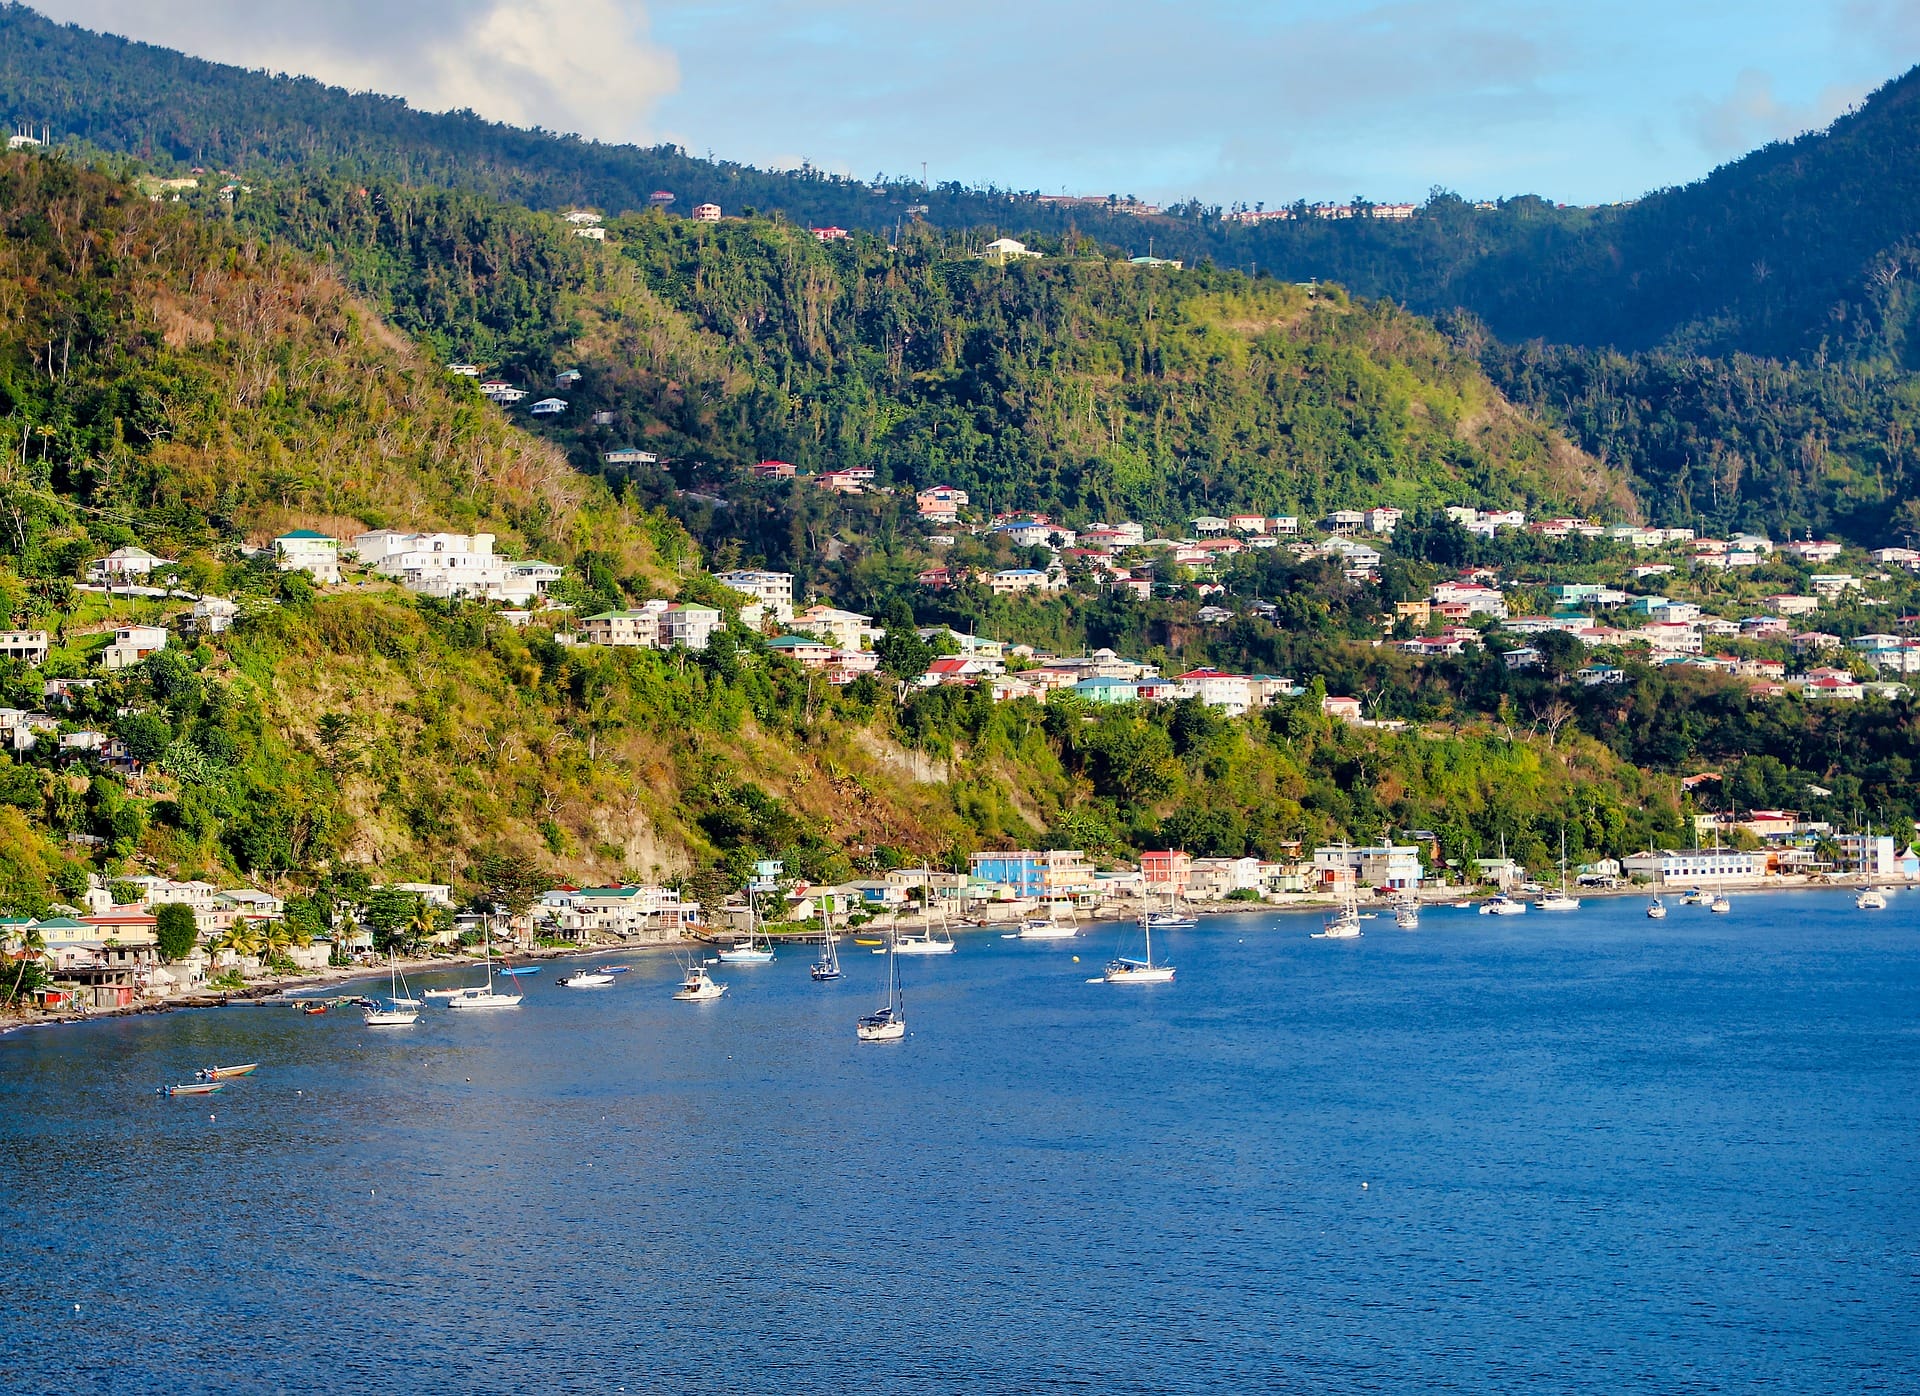 Dominica (3)